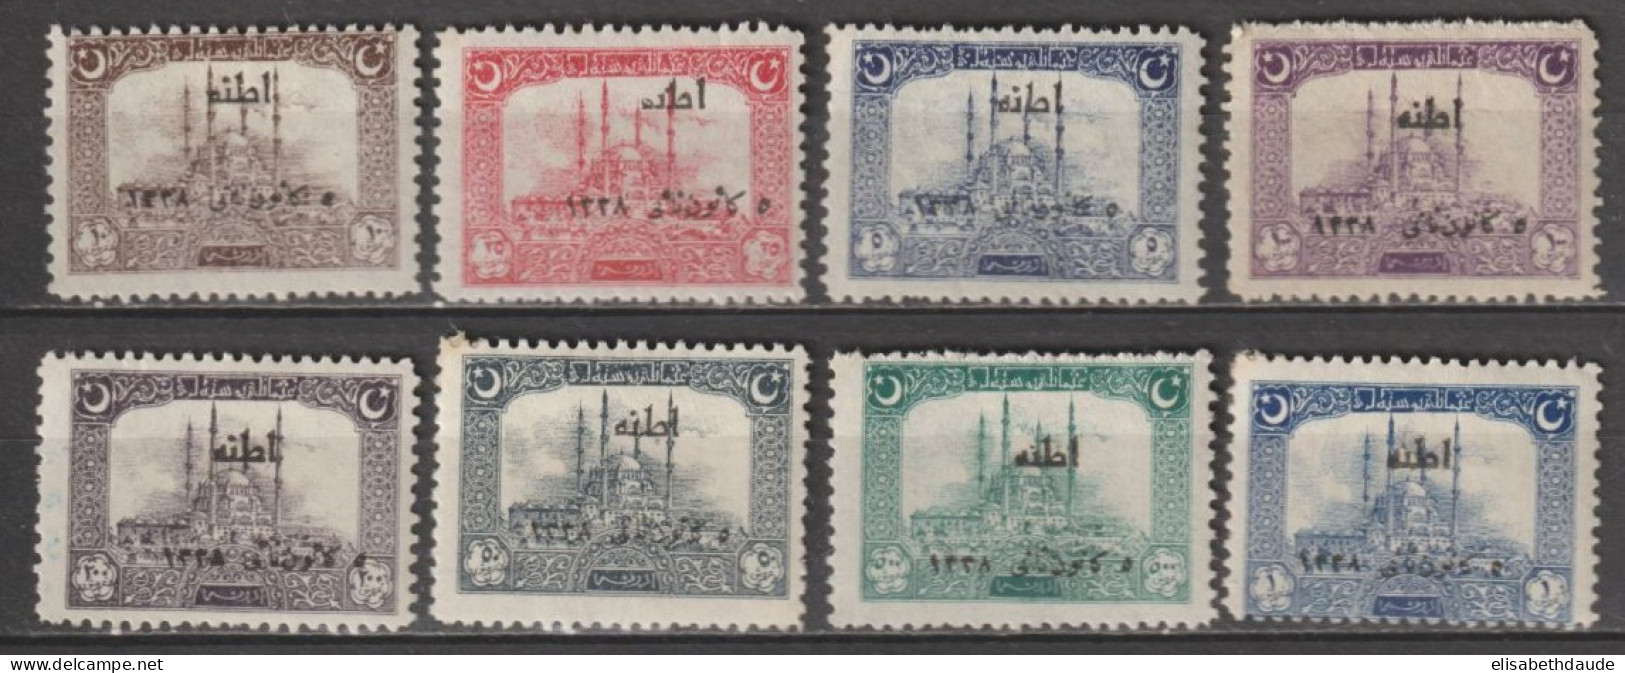 1922 - TURQUIE - ANNEE COMPLETE YVERT N°654/661 * MLH - COTE = 130 EUR - Unused Stamps